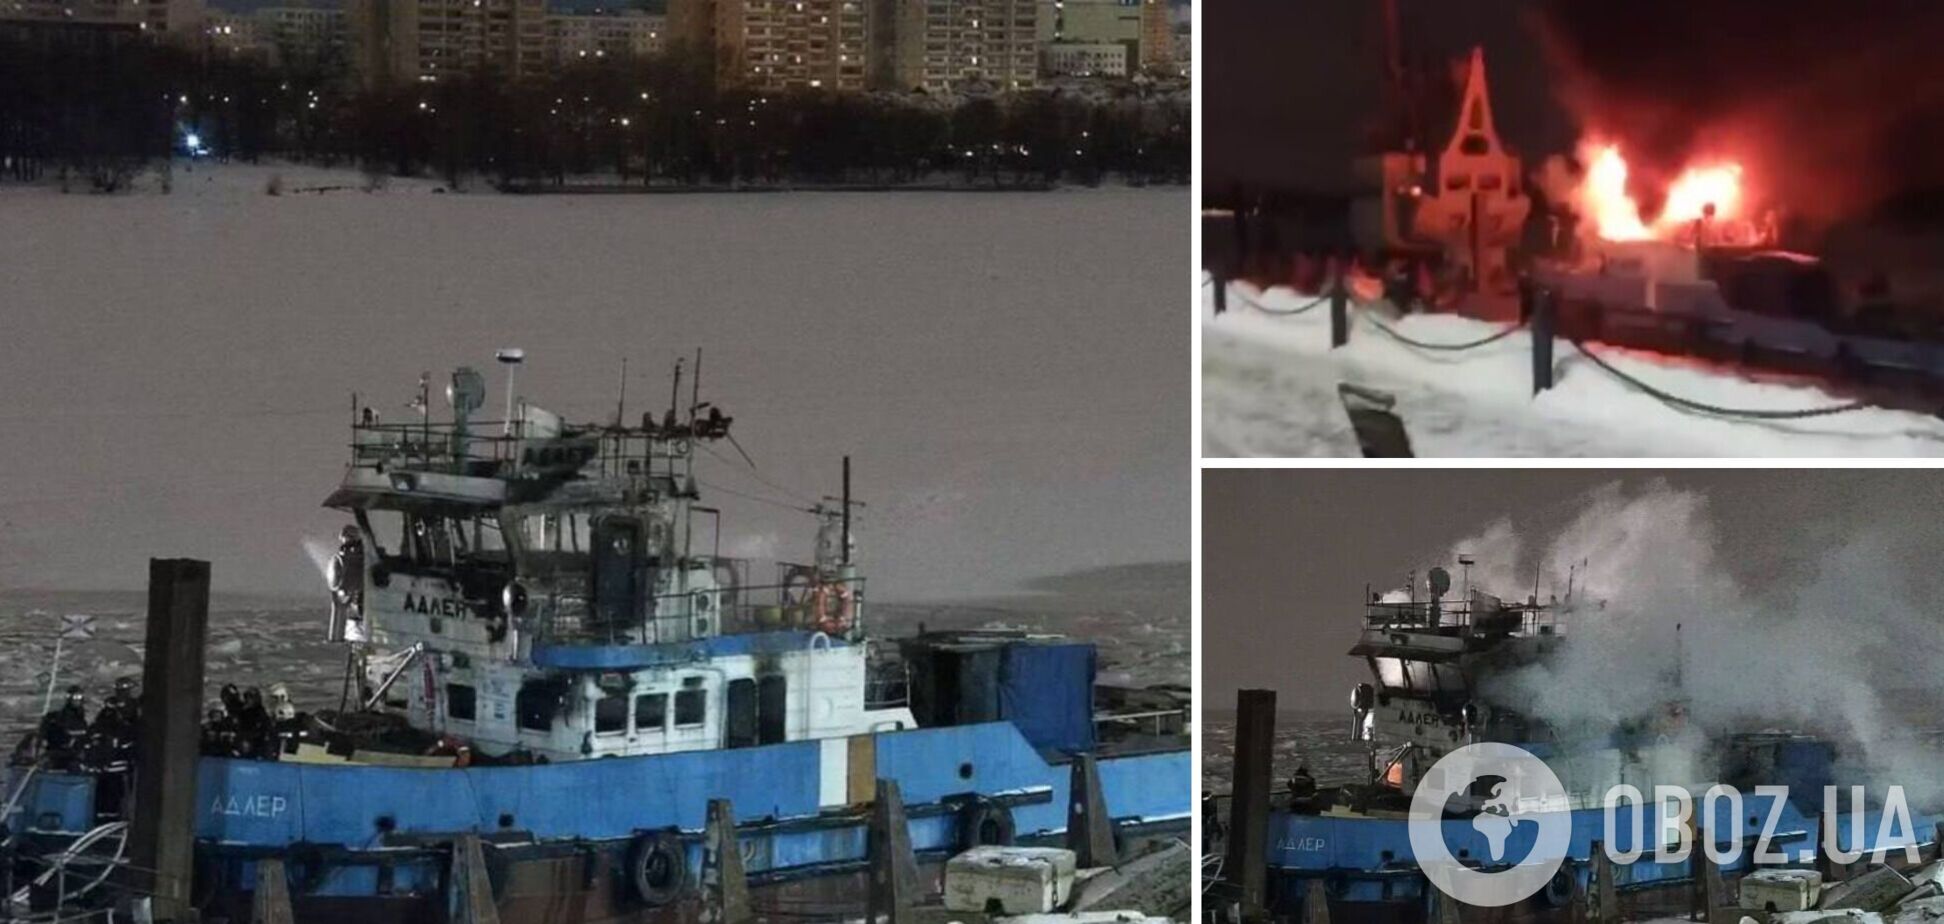 Пожар вспыхнул утром: в Москве в порту сгорел буксир 'Адлер'. Фото и видео